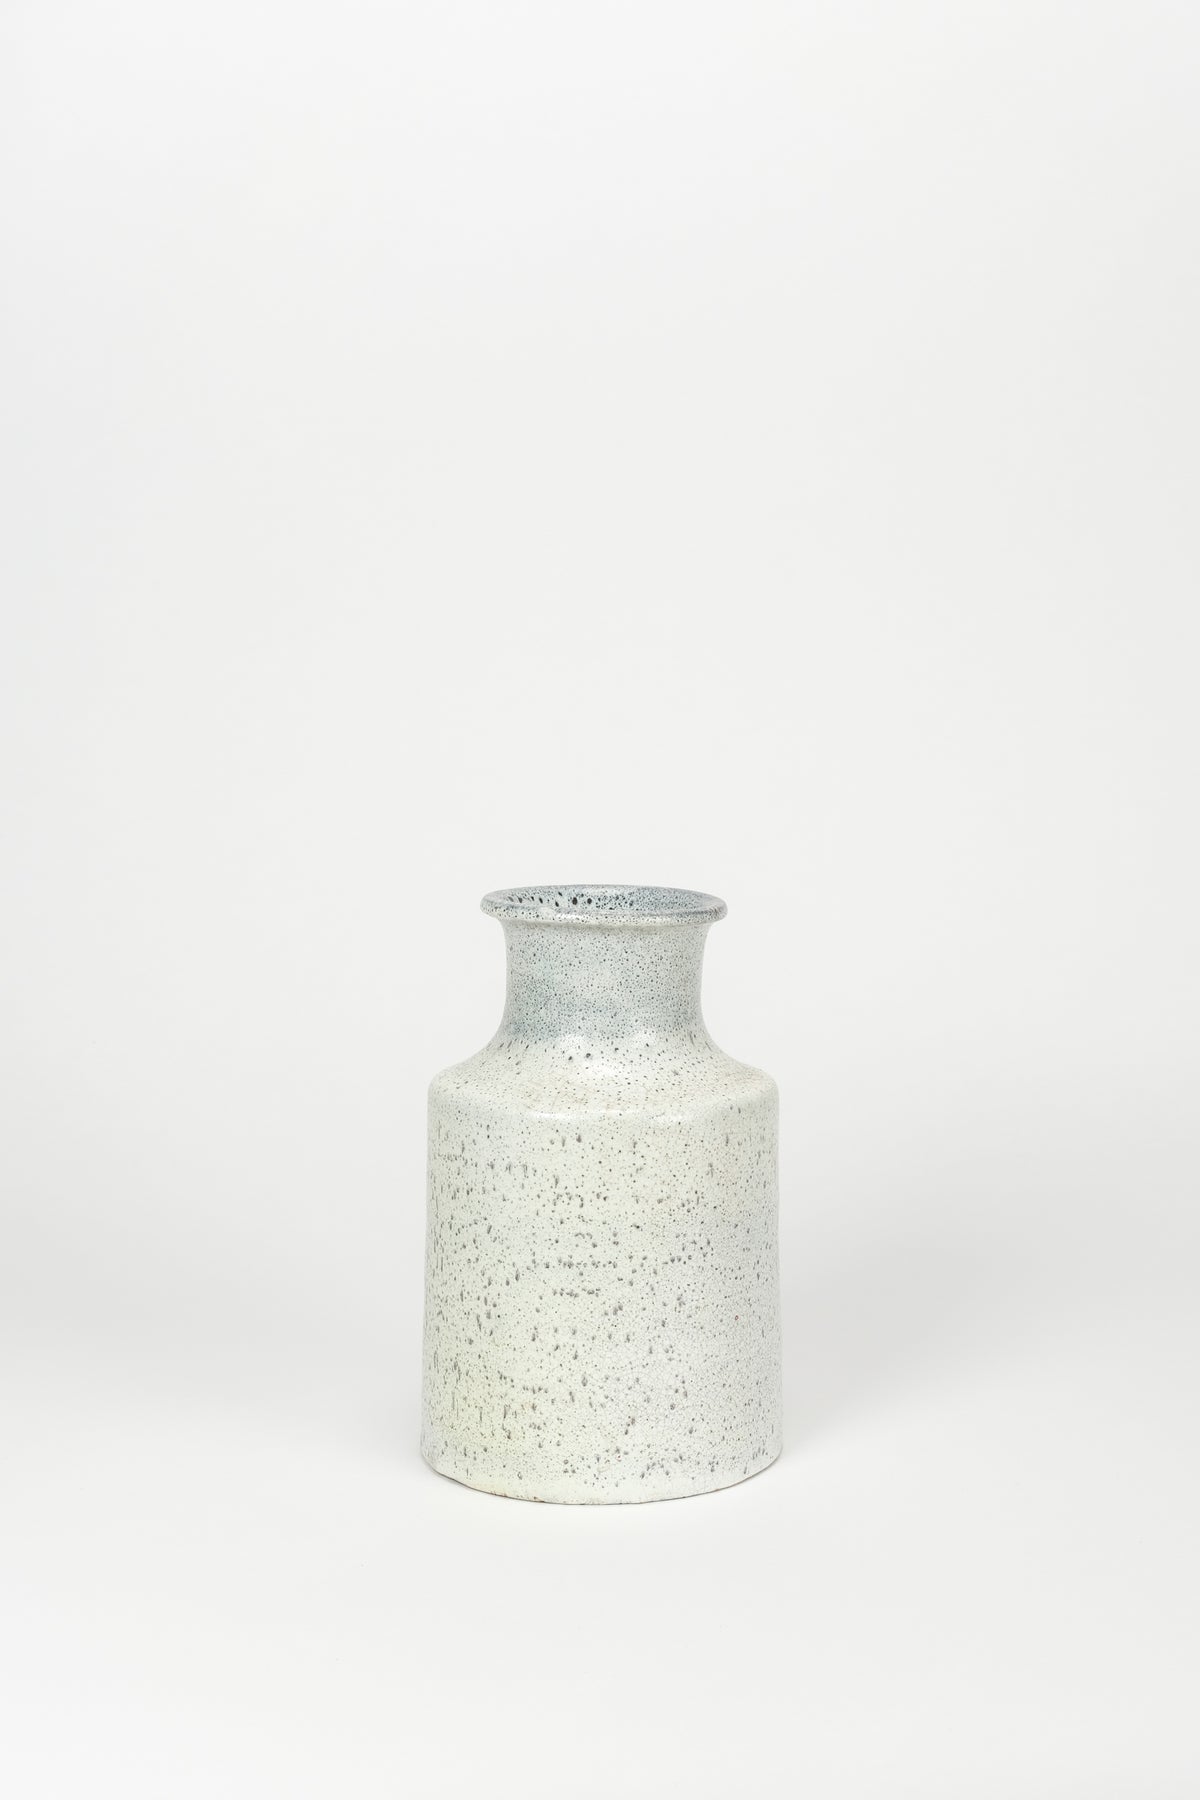 André Freymond Keramik Vase 60er